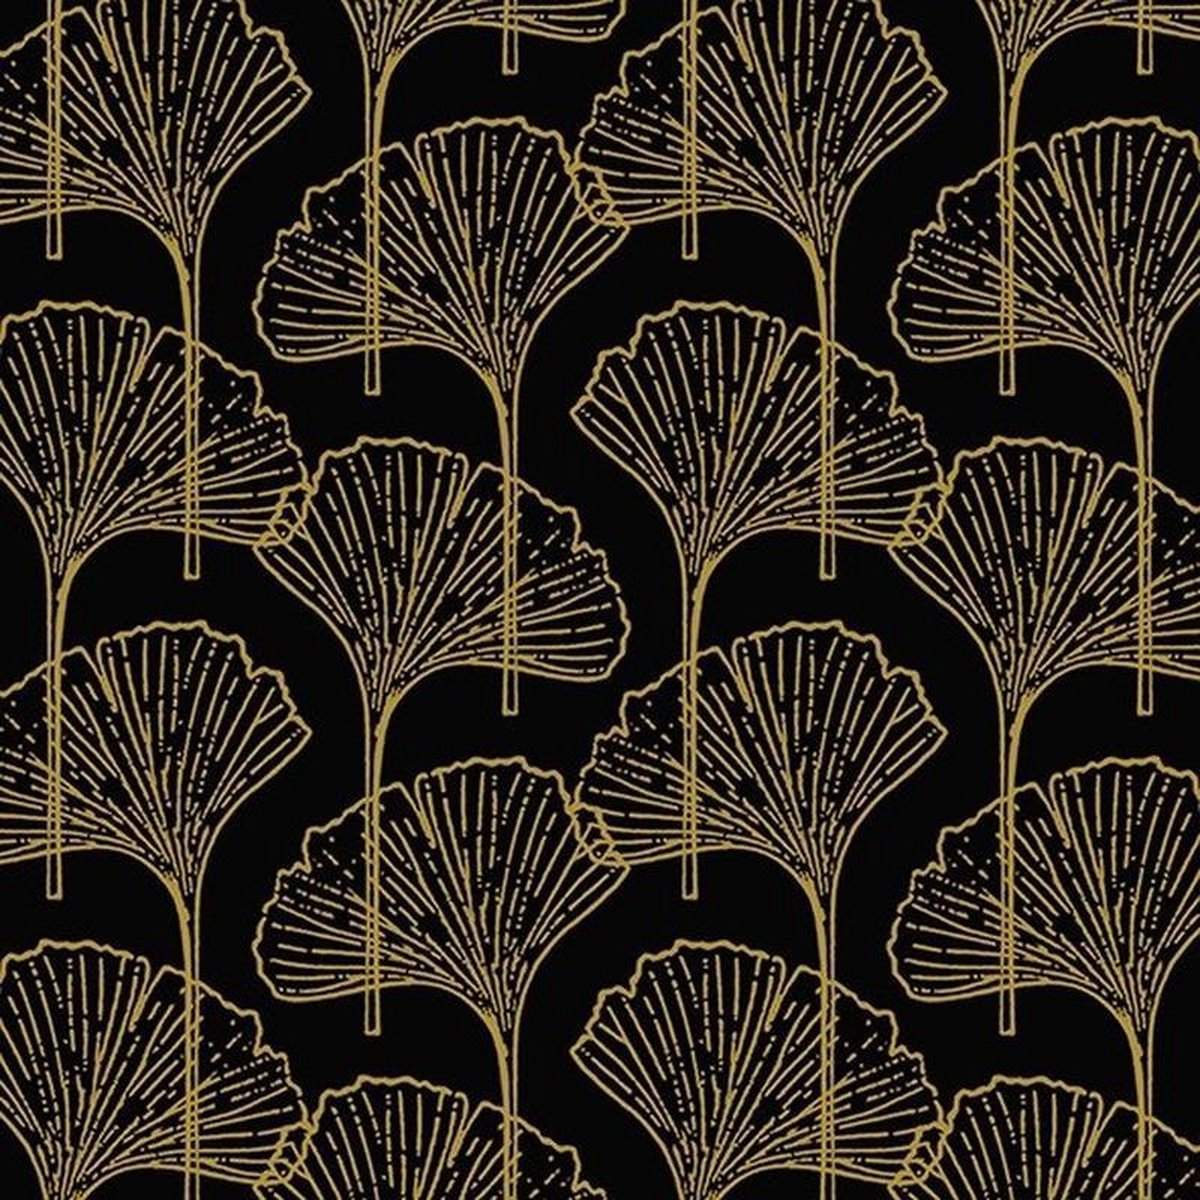 20x Zwart/gouden ginkgo blad print servetten 33 x 33 cm - Thema zwart/goud - Tafeldecoratie versieringen - Merkloos